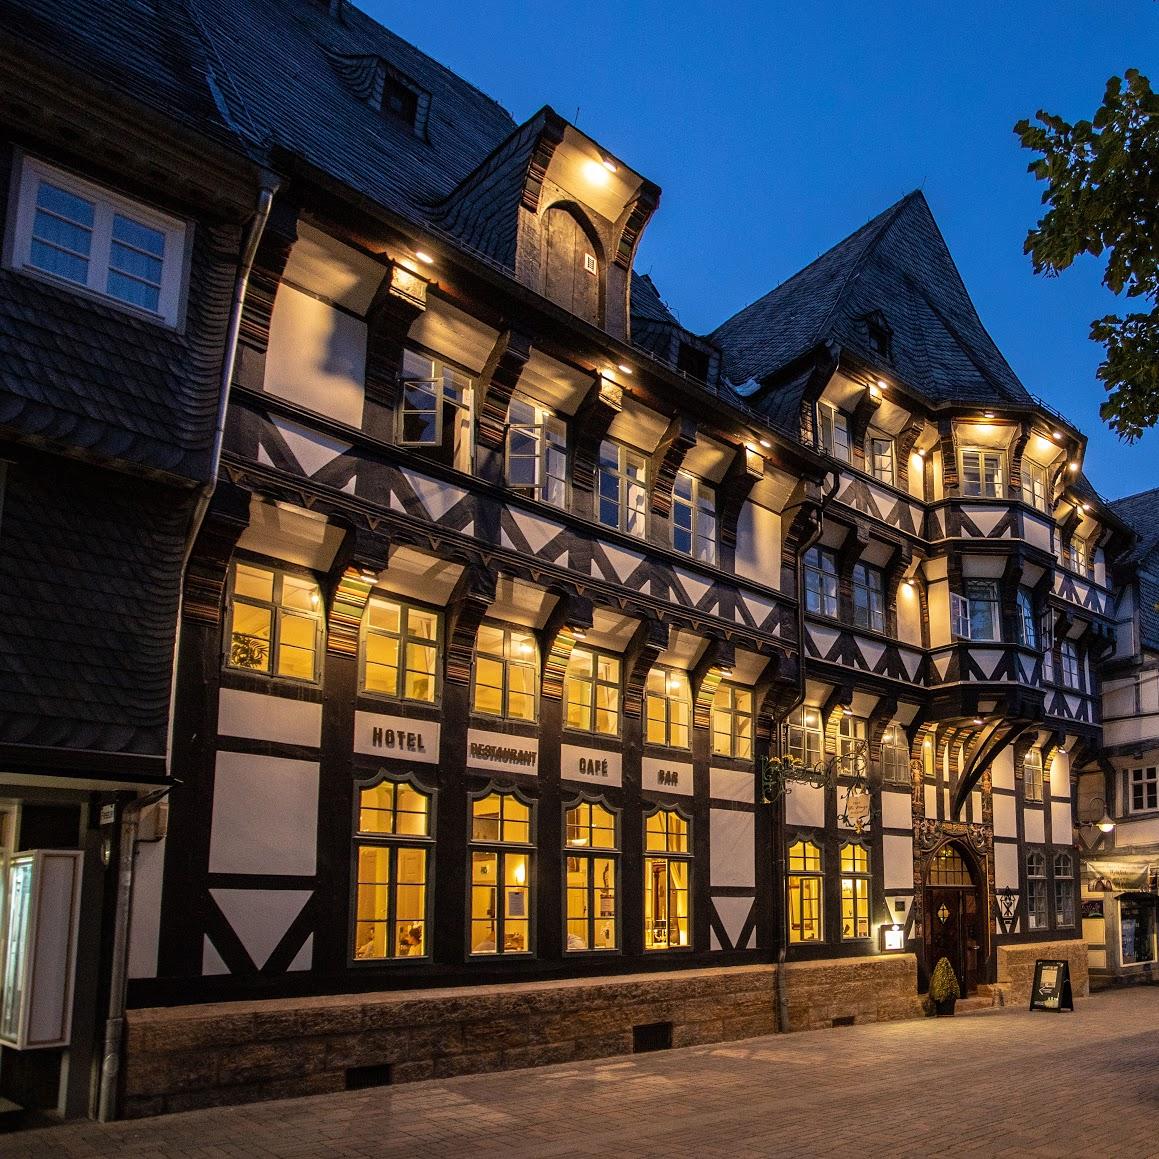 Restaurant "Romantik Hotel Alte Münze" in Goslar